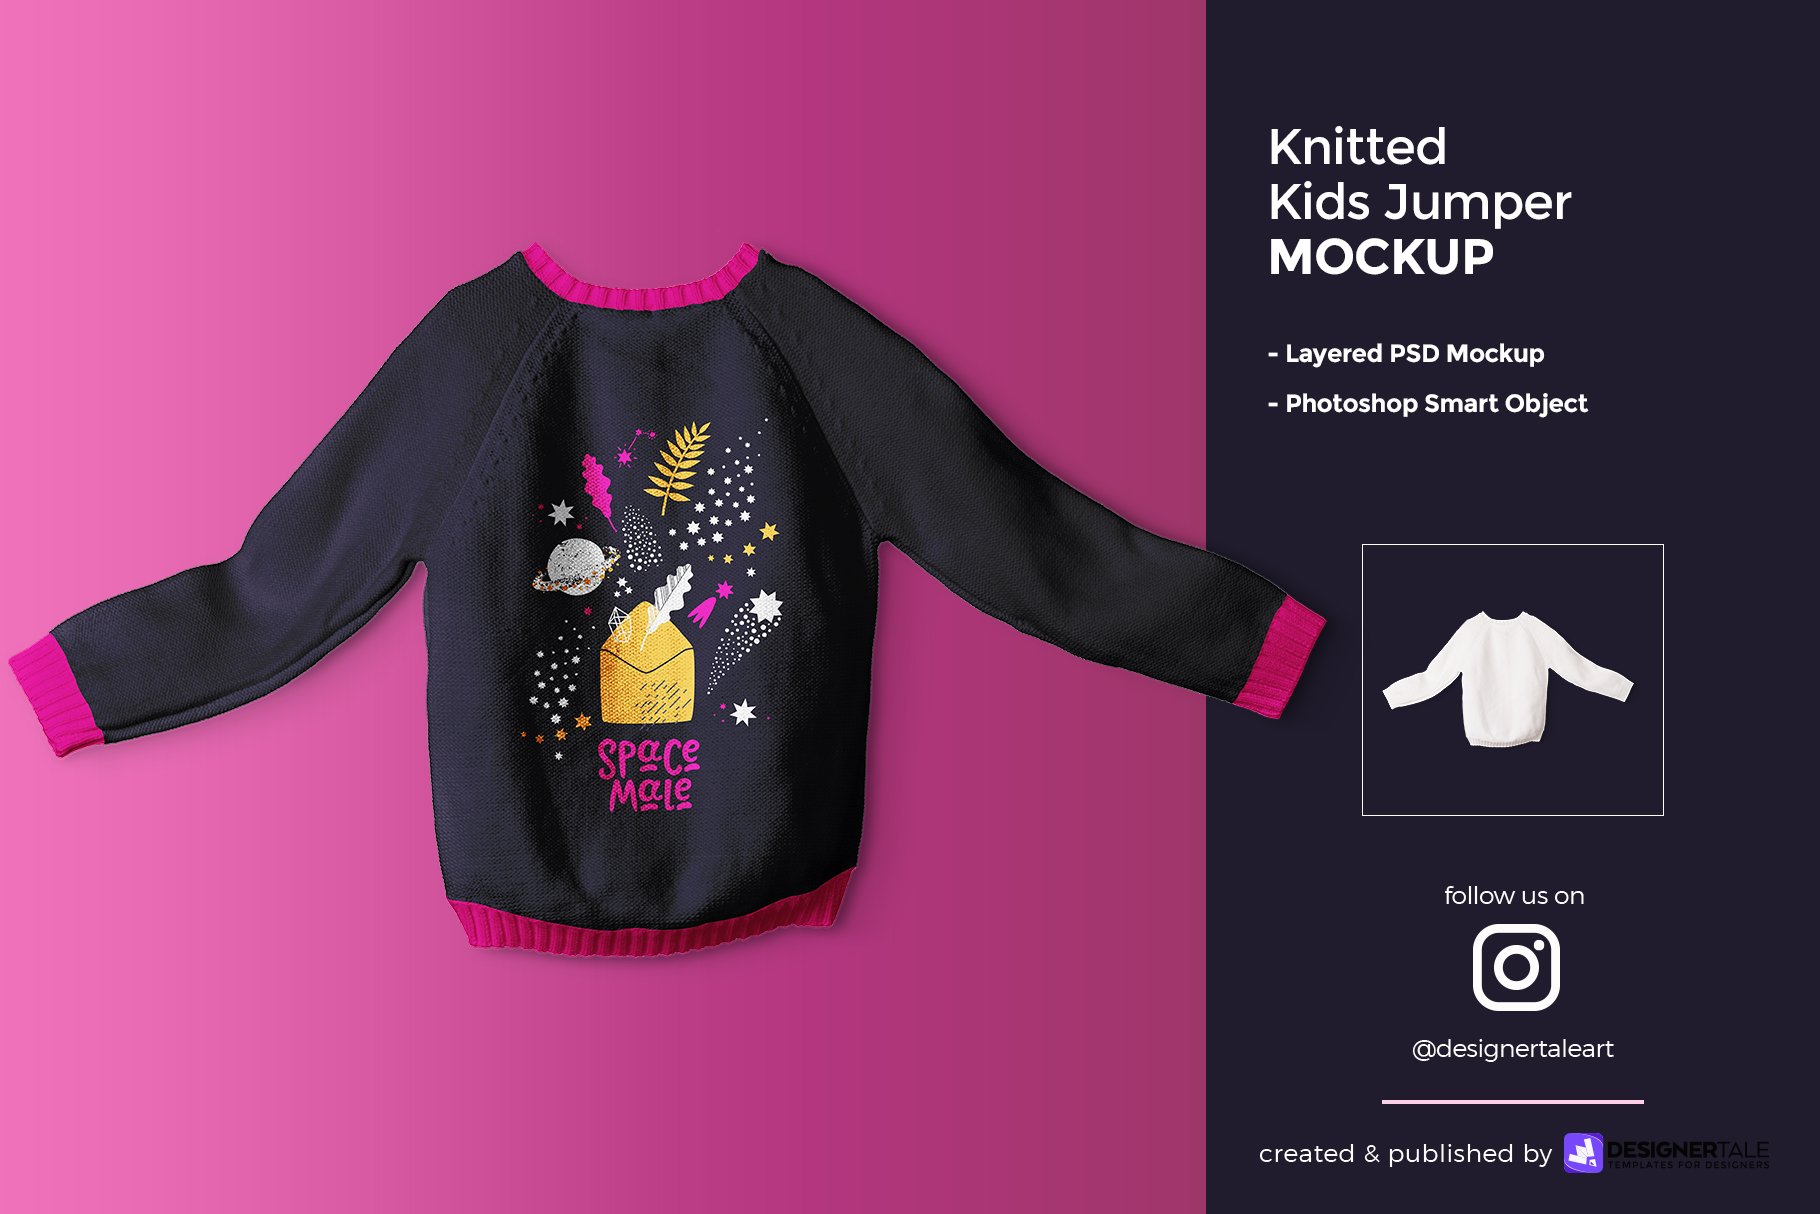 Knitted Kids Jumper Mockup